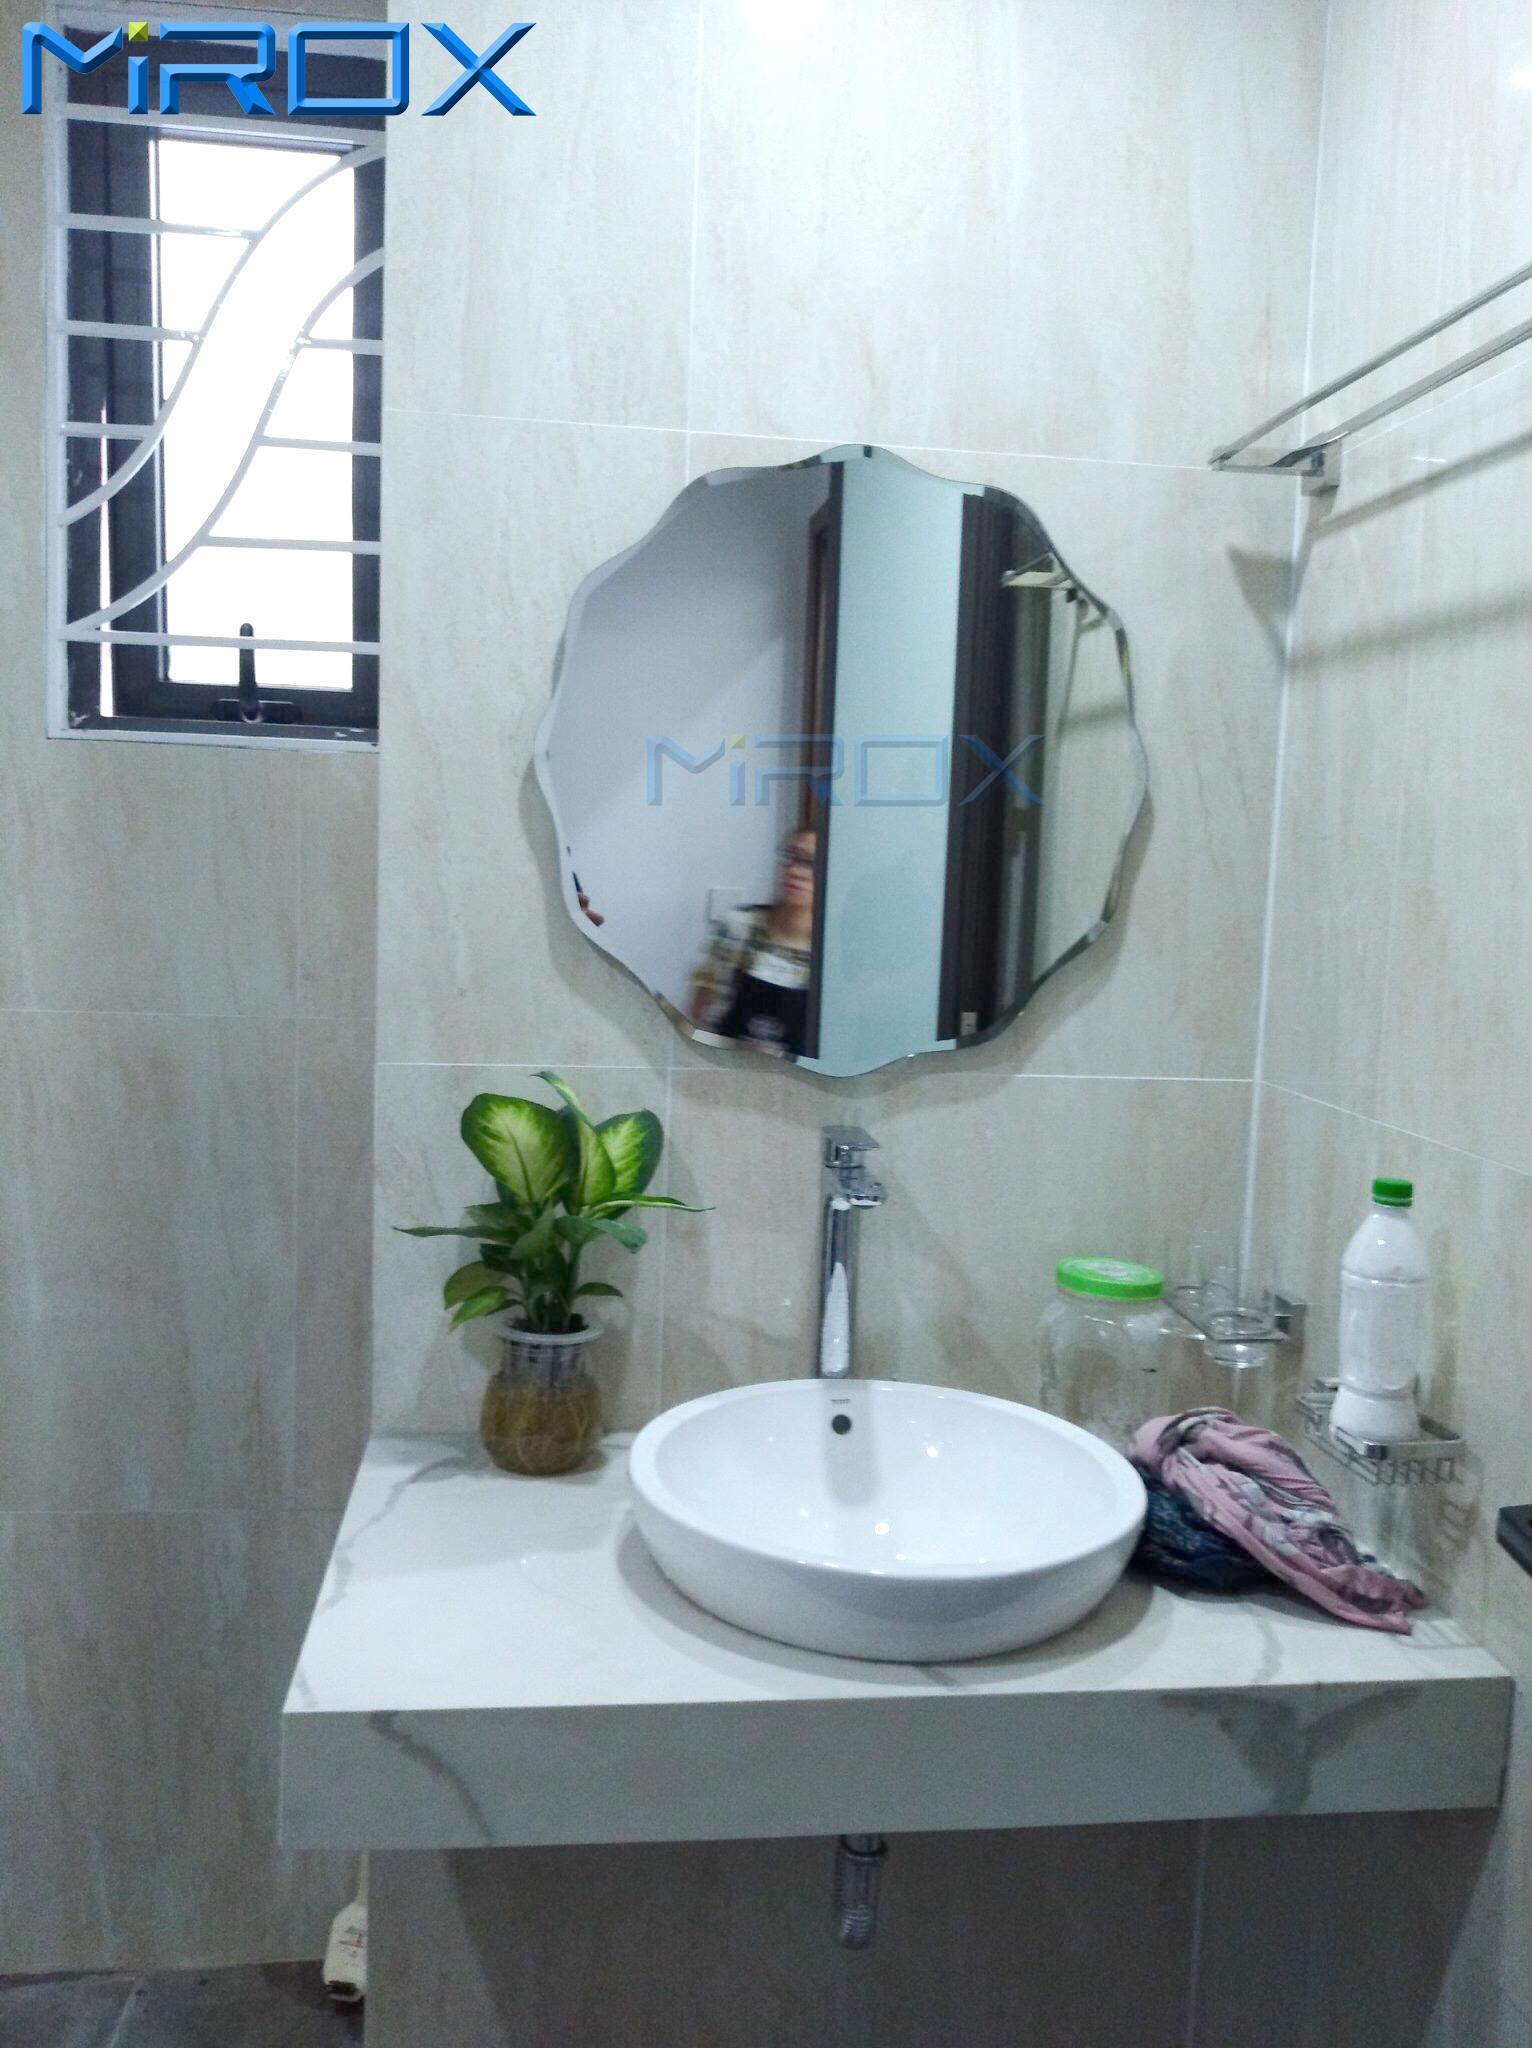 Gương tròn thiết bị vệ sinh cao cấp: Với thiết kế hiện đại, gương tròn cao cấp không chỉ là một thiết bị vệ sinh cần thiết mà còn là điểm nhấn thú vị cho phòng tắm của bạn. Với chất liệu và độ bền cao, mẫu gương này sẽ đem lại sự tiện nghi và thẩm mỹ cho không gian phòng tắm của bạn.